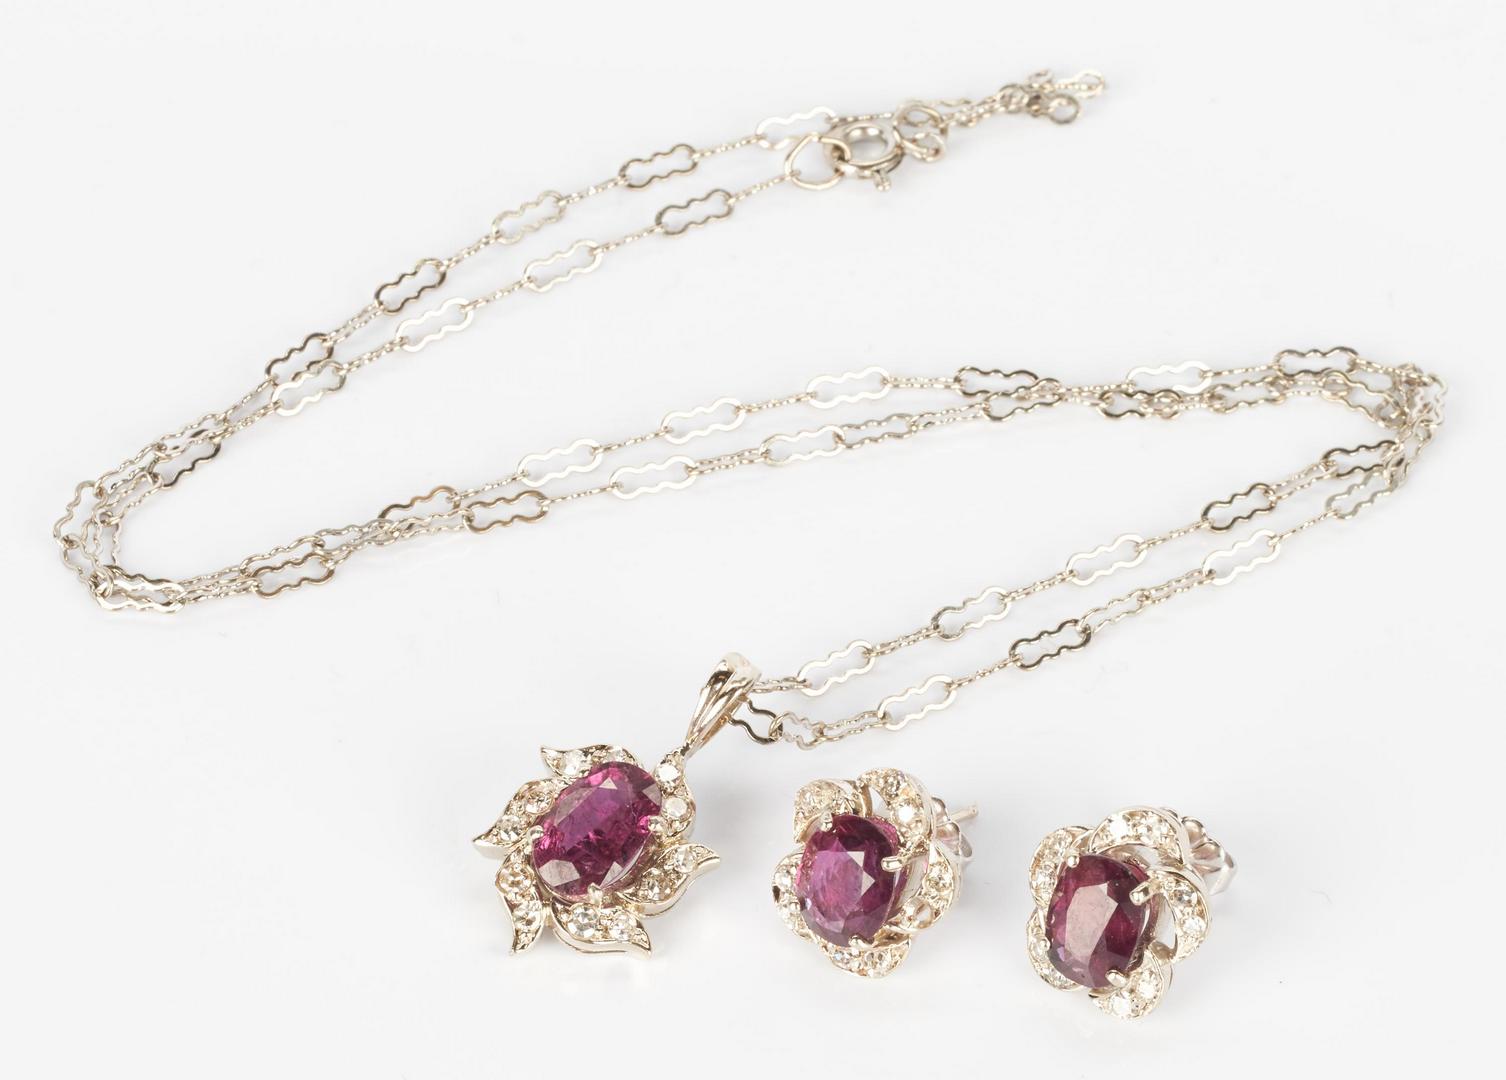 Lot 1011: 14K Ruby & Diamond Pendant, Ruby Earrings